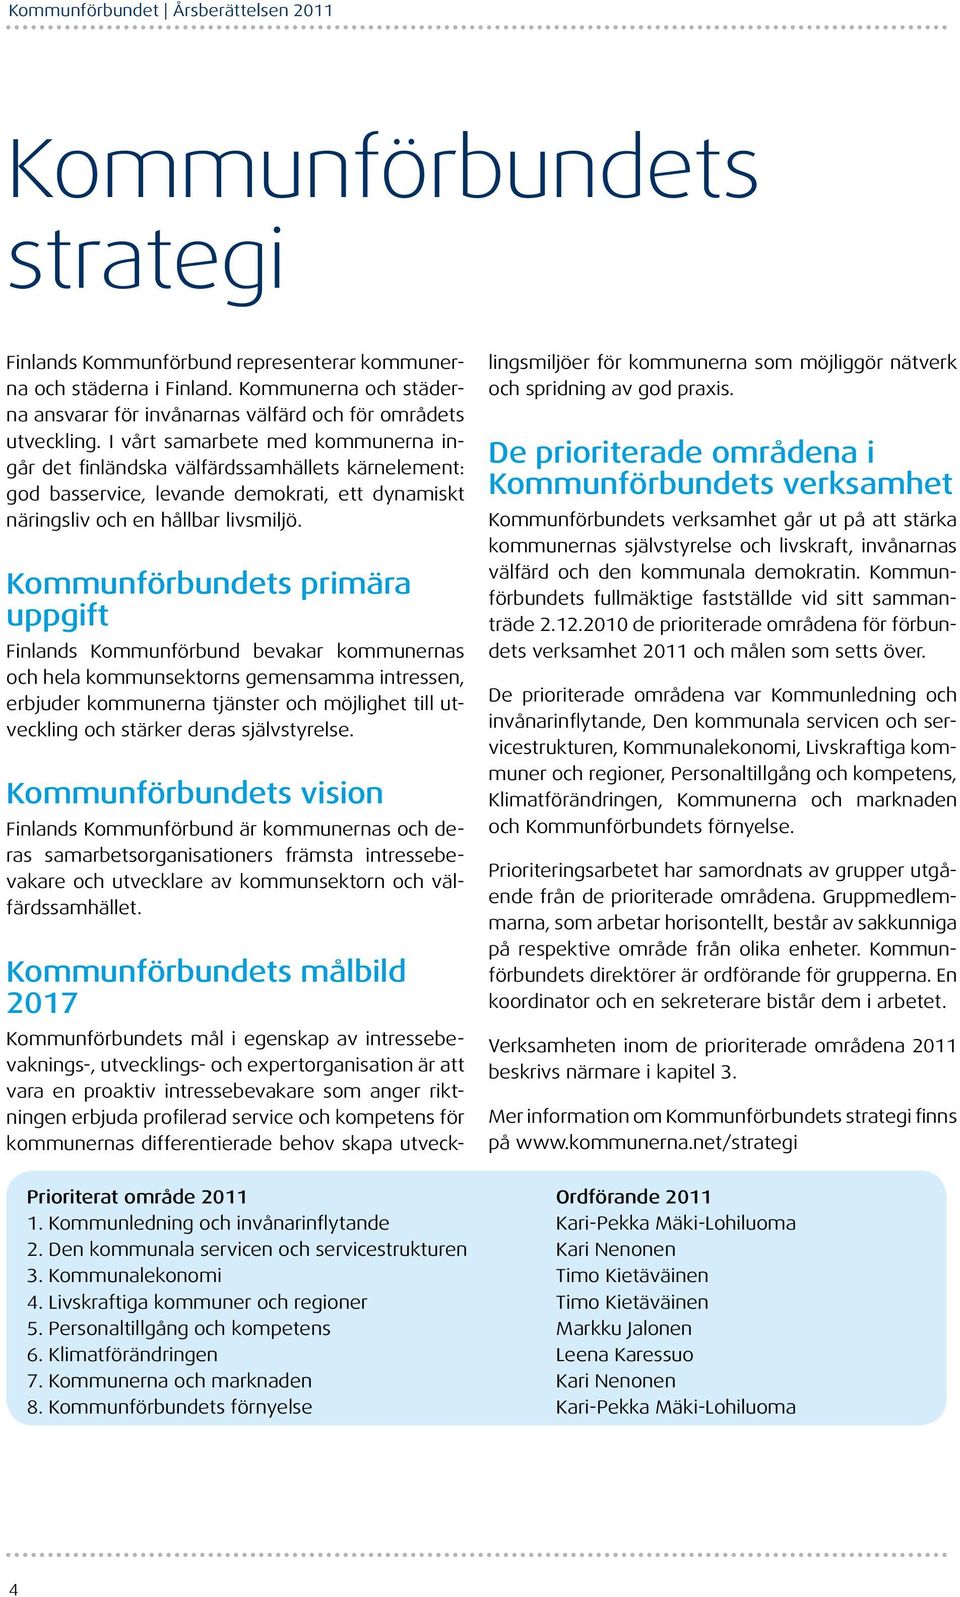 Kommunförbundets primära uppgift Finlands Kommunförbund bevakar kommunernas och hela kommunsektorns gemensamma intressen, erbjuder kommunerna tjänster och möjlighet till utveckling och stärker deras